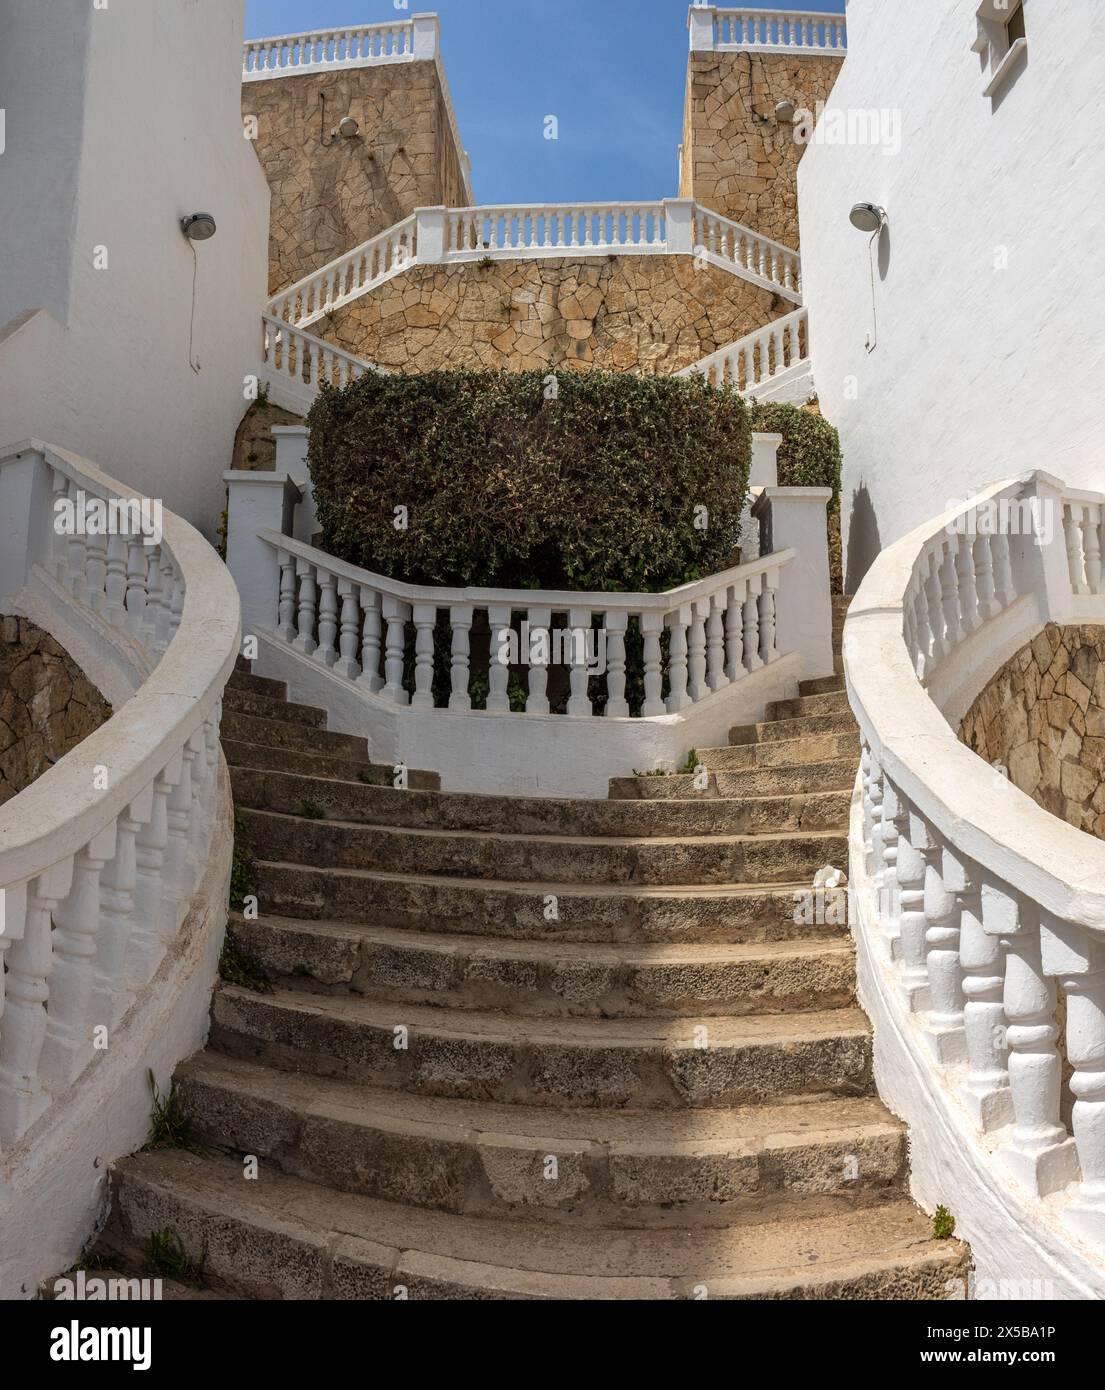 Escaleras en el paseo marítimo del puerto de Mahón, Menorca, España Stock Photo